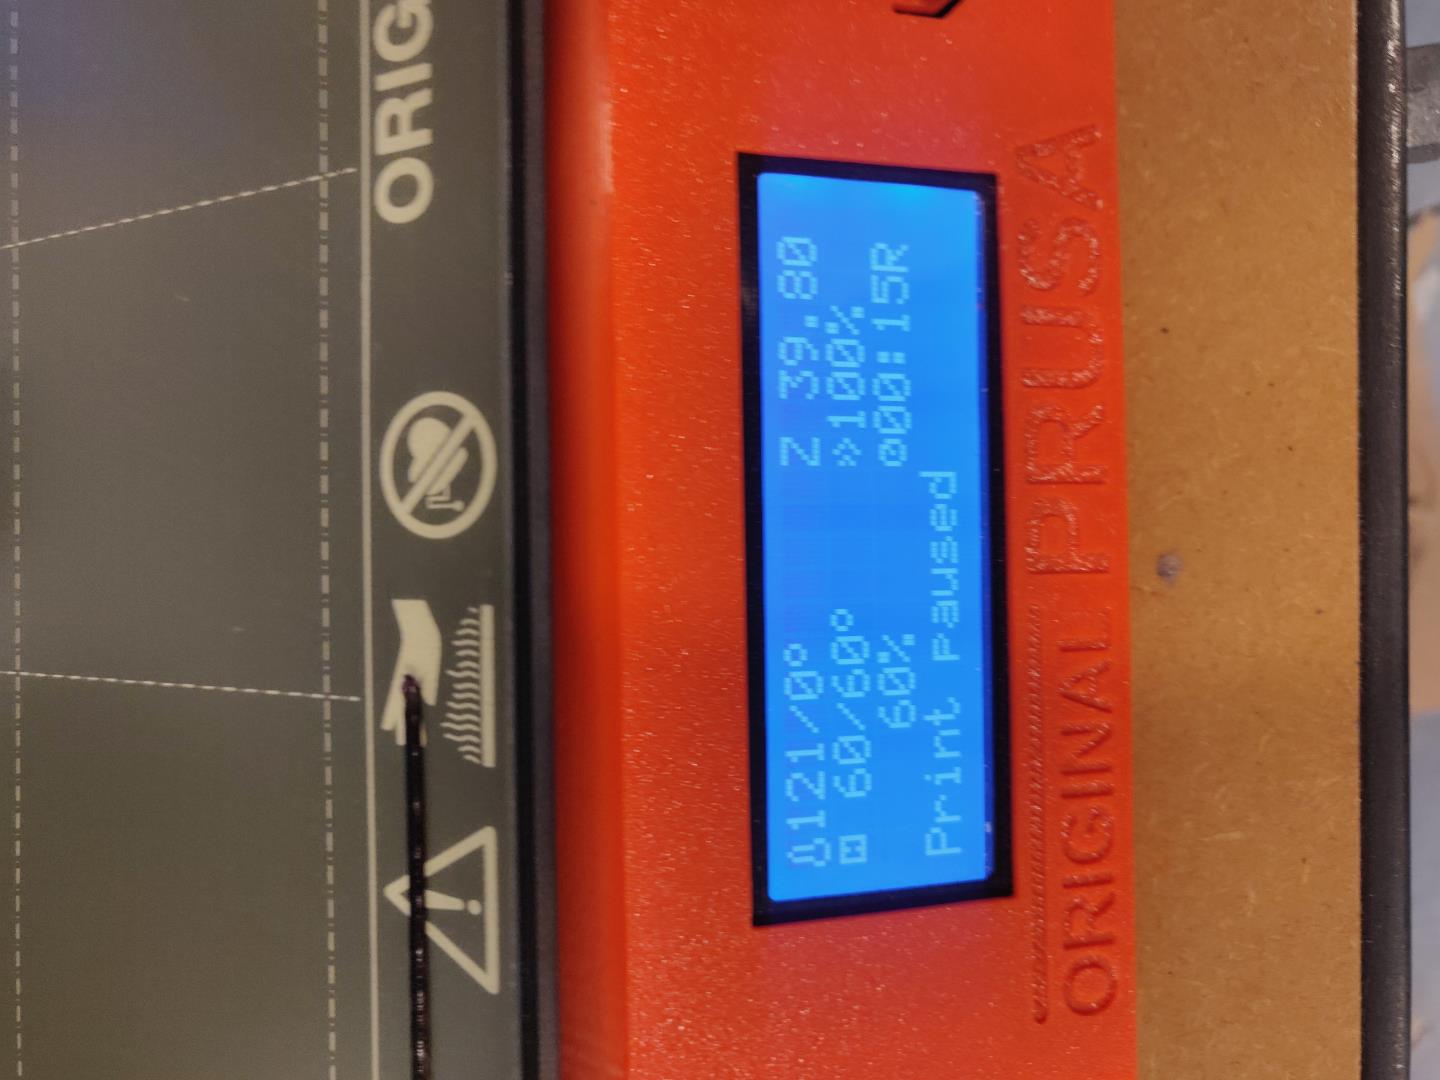 Printer paused